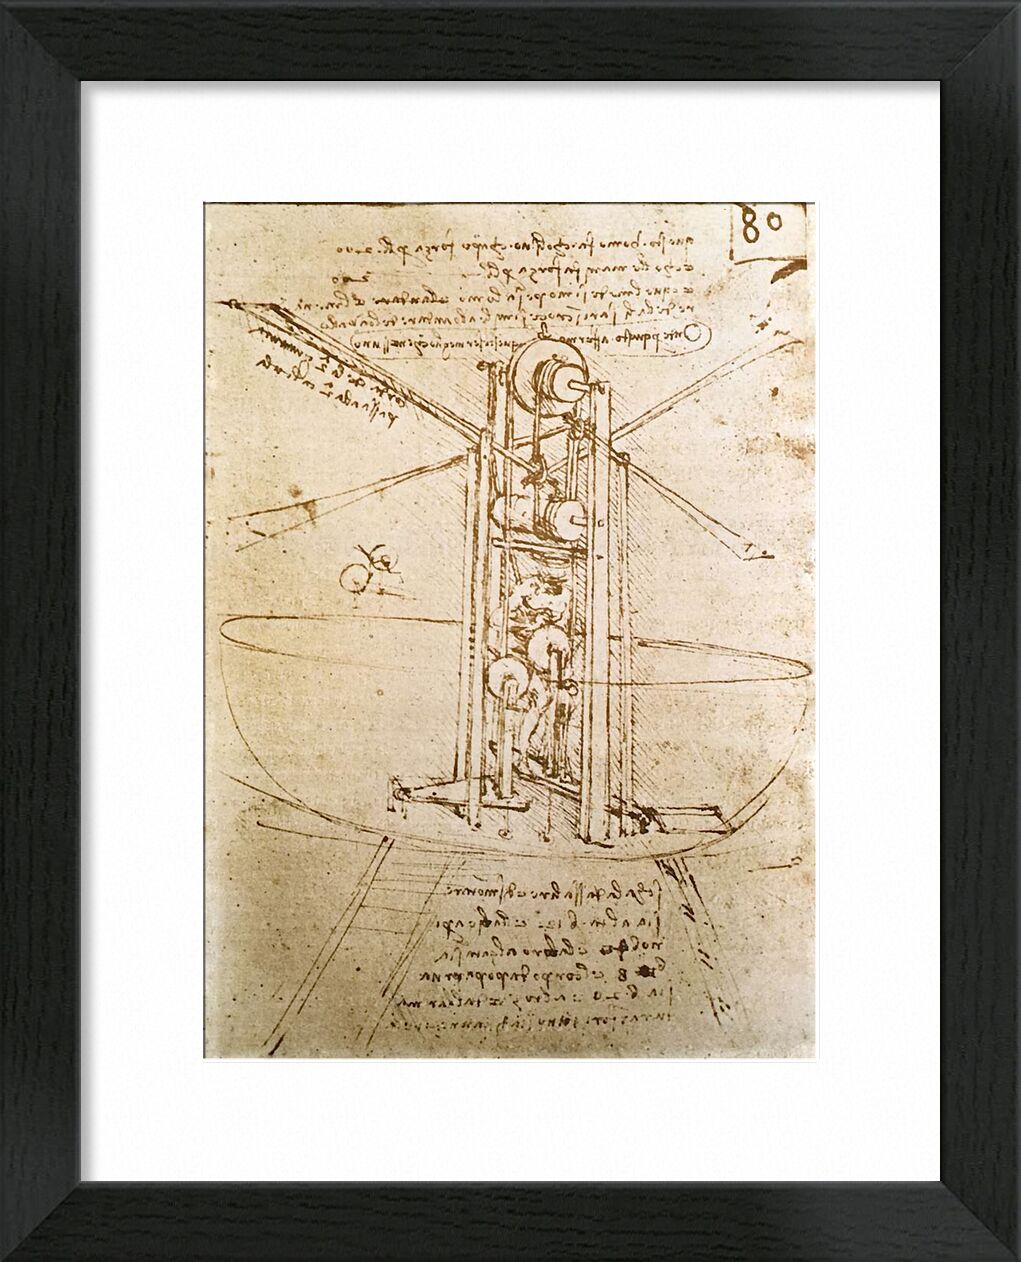 Vertically Standing Bird's-Winged Flying Machine - Leonardo da Vinci von Bildende Kunst, Prodi Art, Diagramm, Leonardo da Vinci, Flugzeug, skizzieren, Bleistiftzeichnung